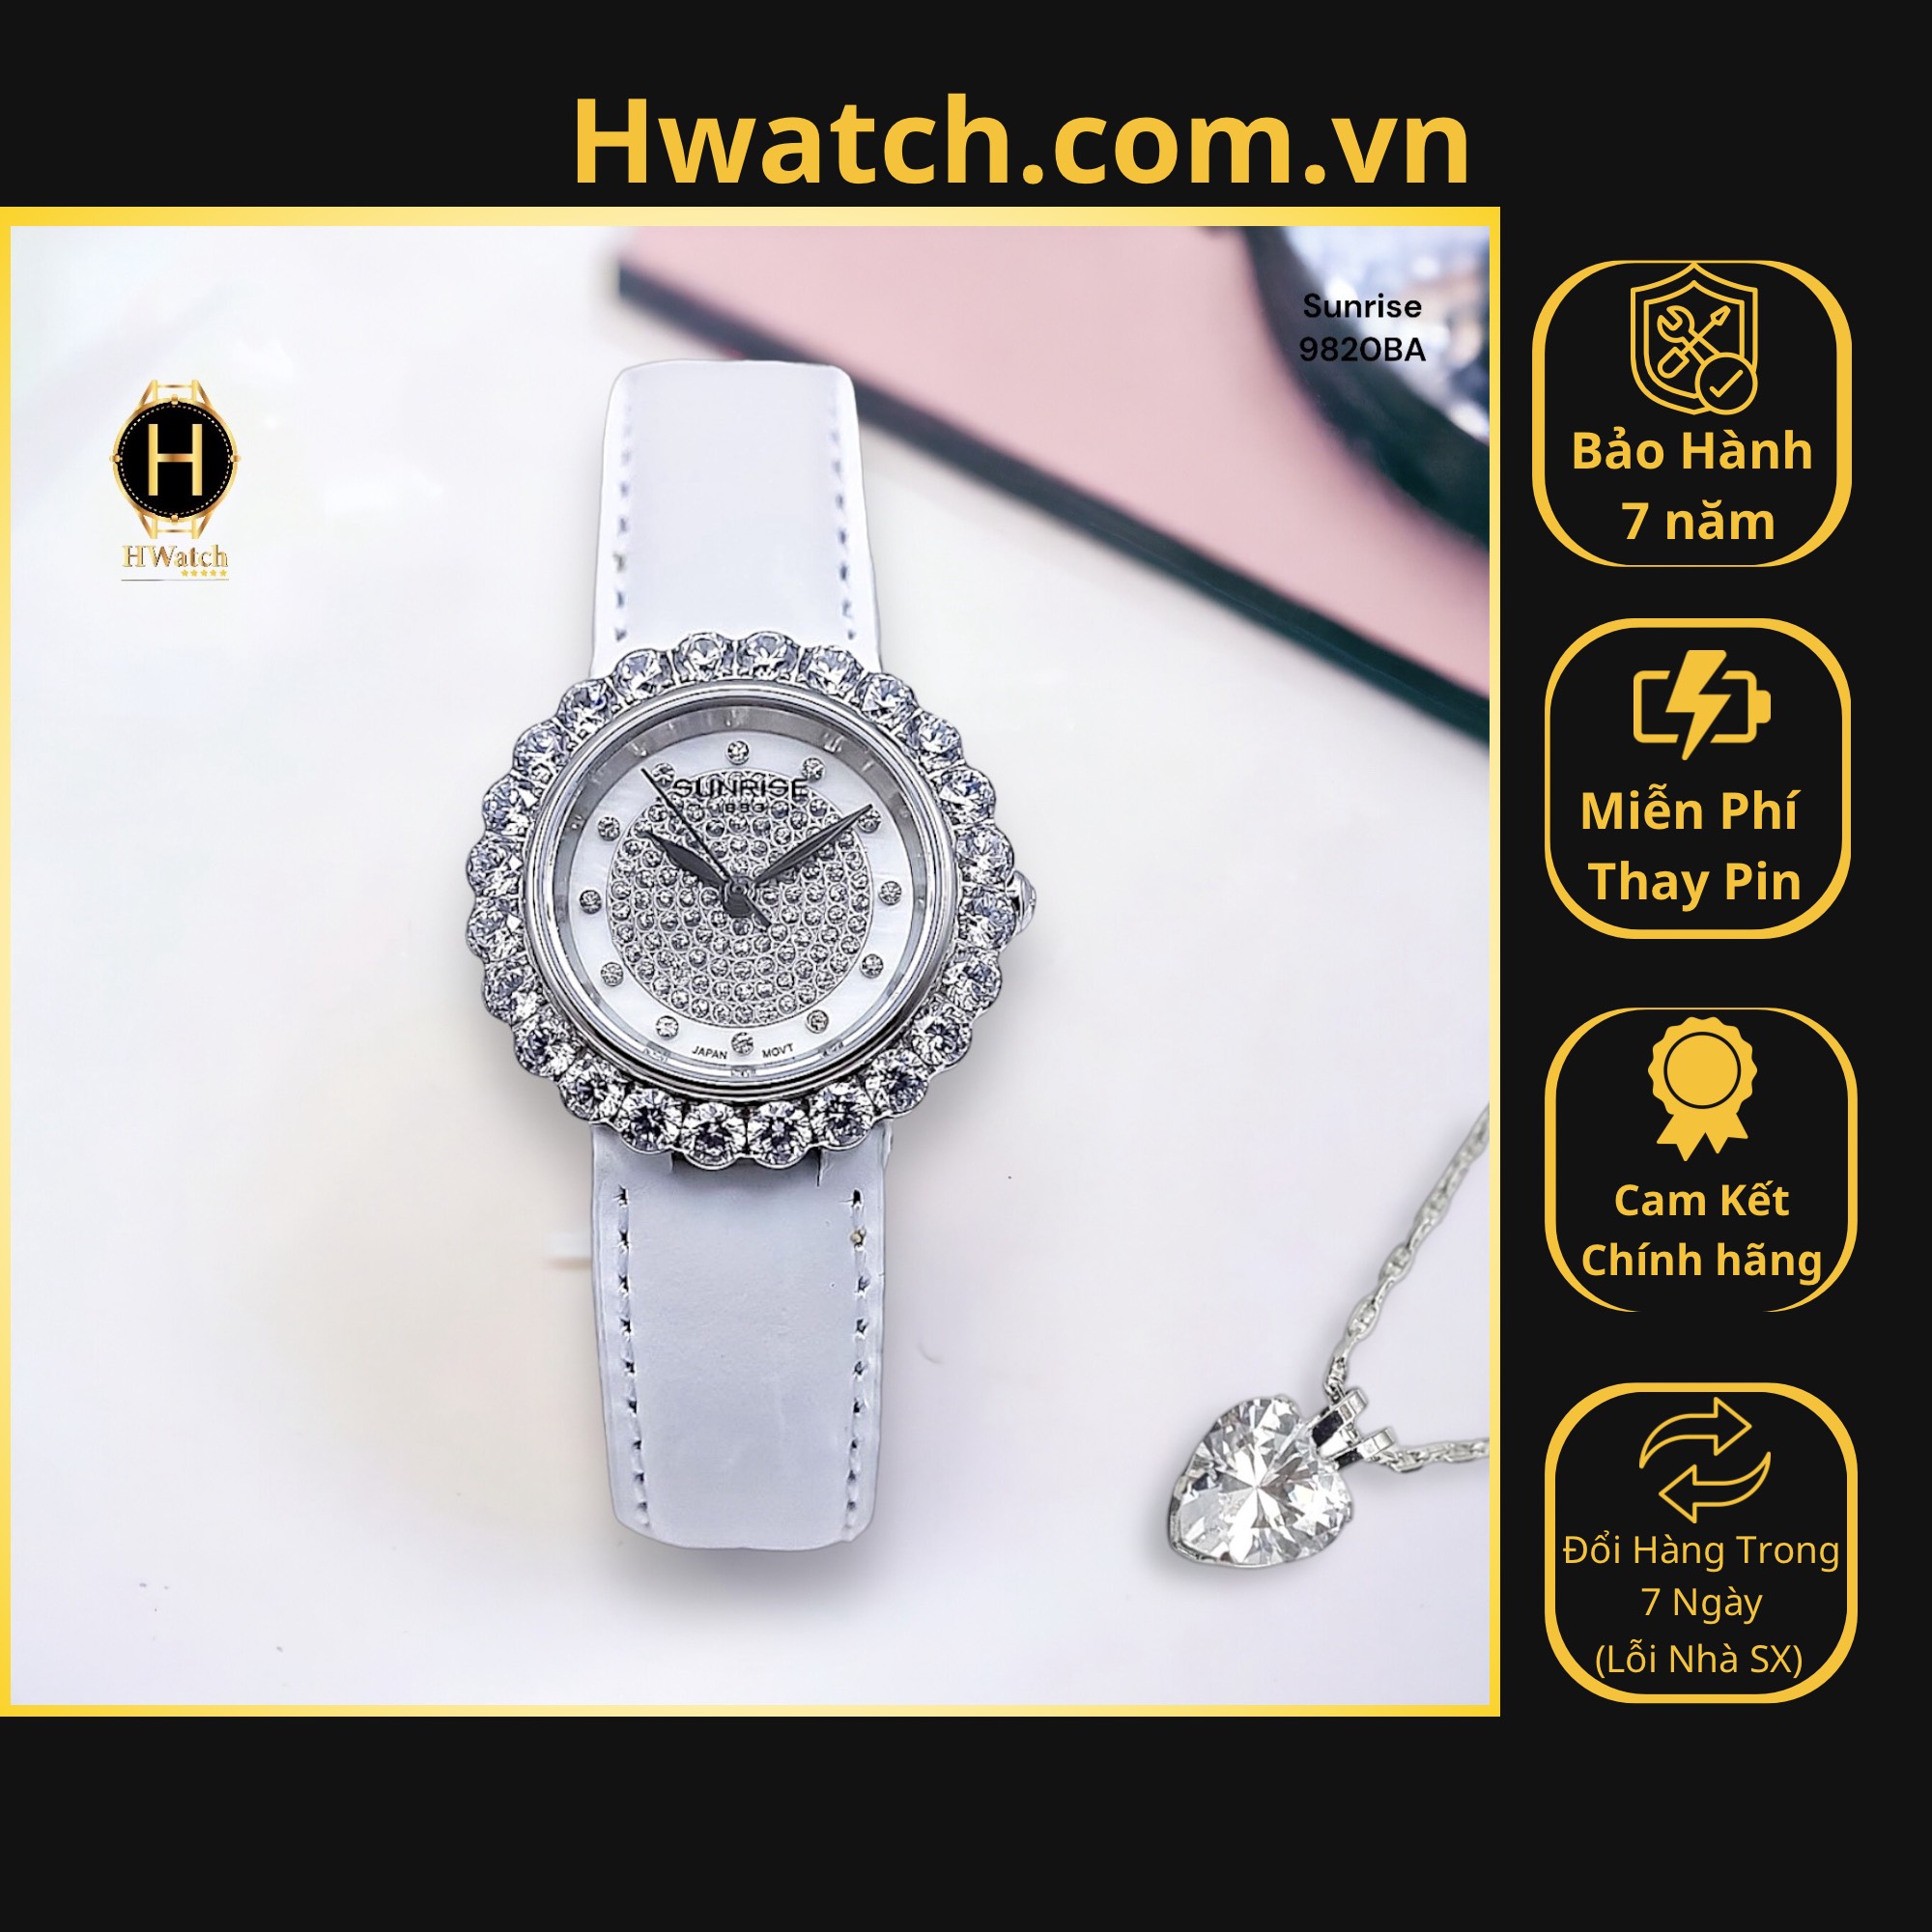 [Có sẵn] [Chính hãng] Đồng Hồ Nữ Sunrise Pin 9820BA Dây Da Trắng Mặt Trắng Sapphire Hwatch.com.vn